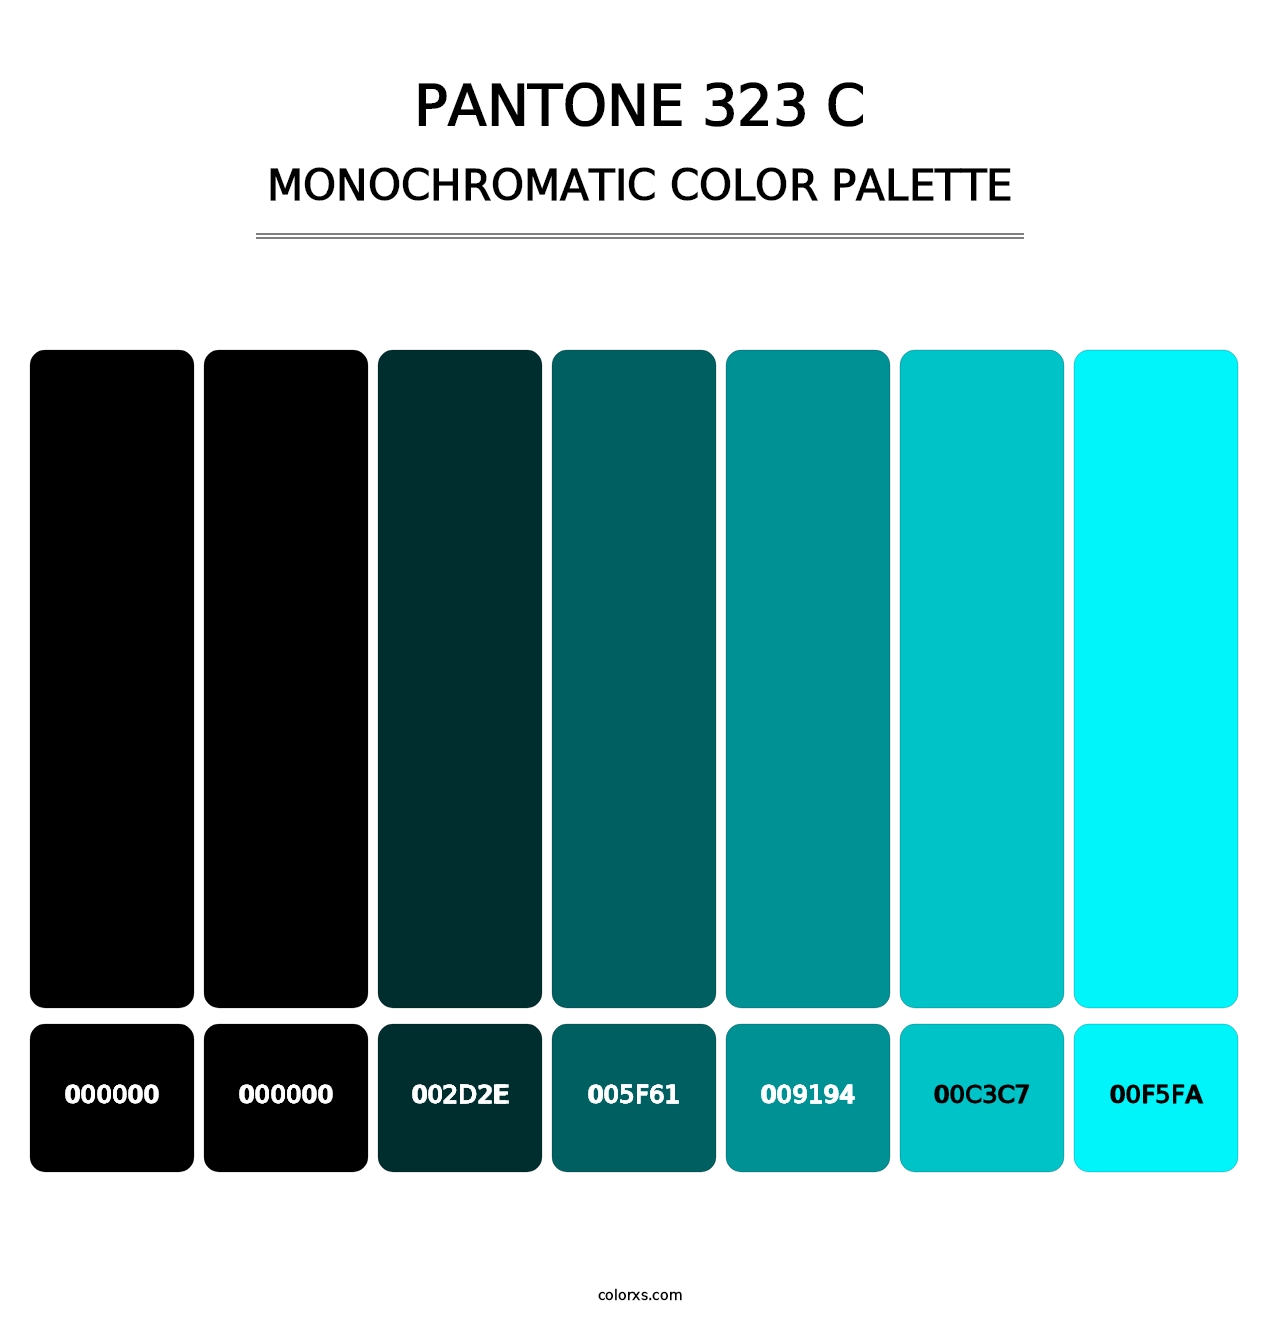 PANTONE 323 C - Monochromatic Color Palette